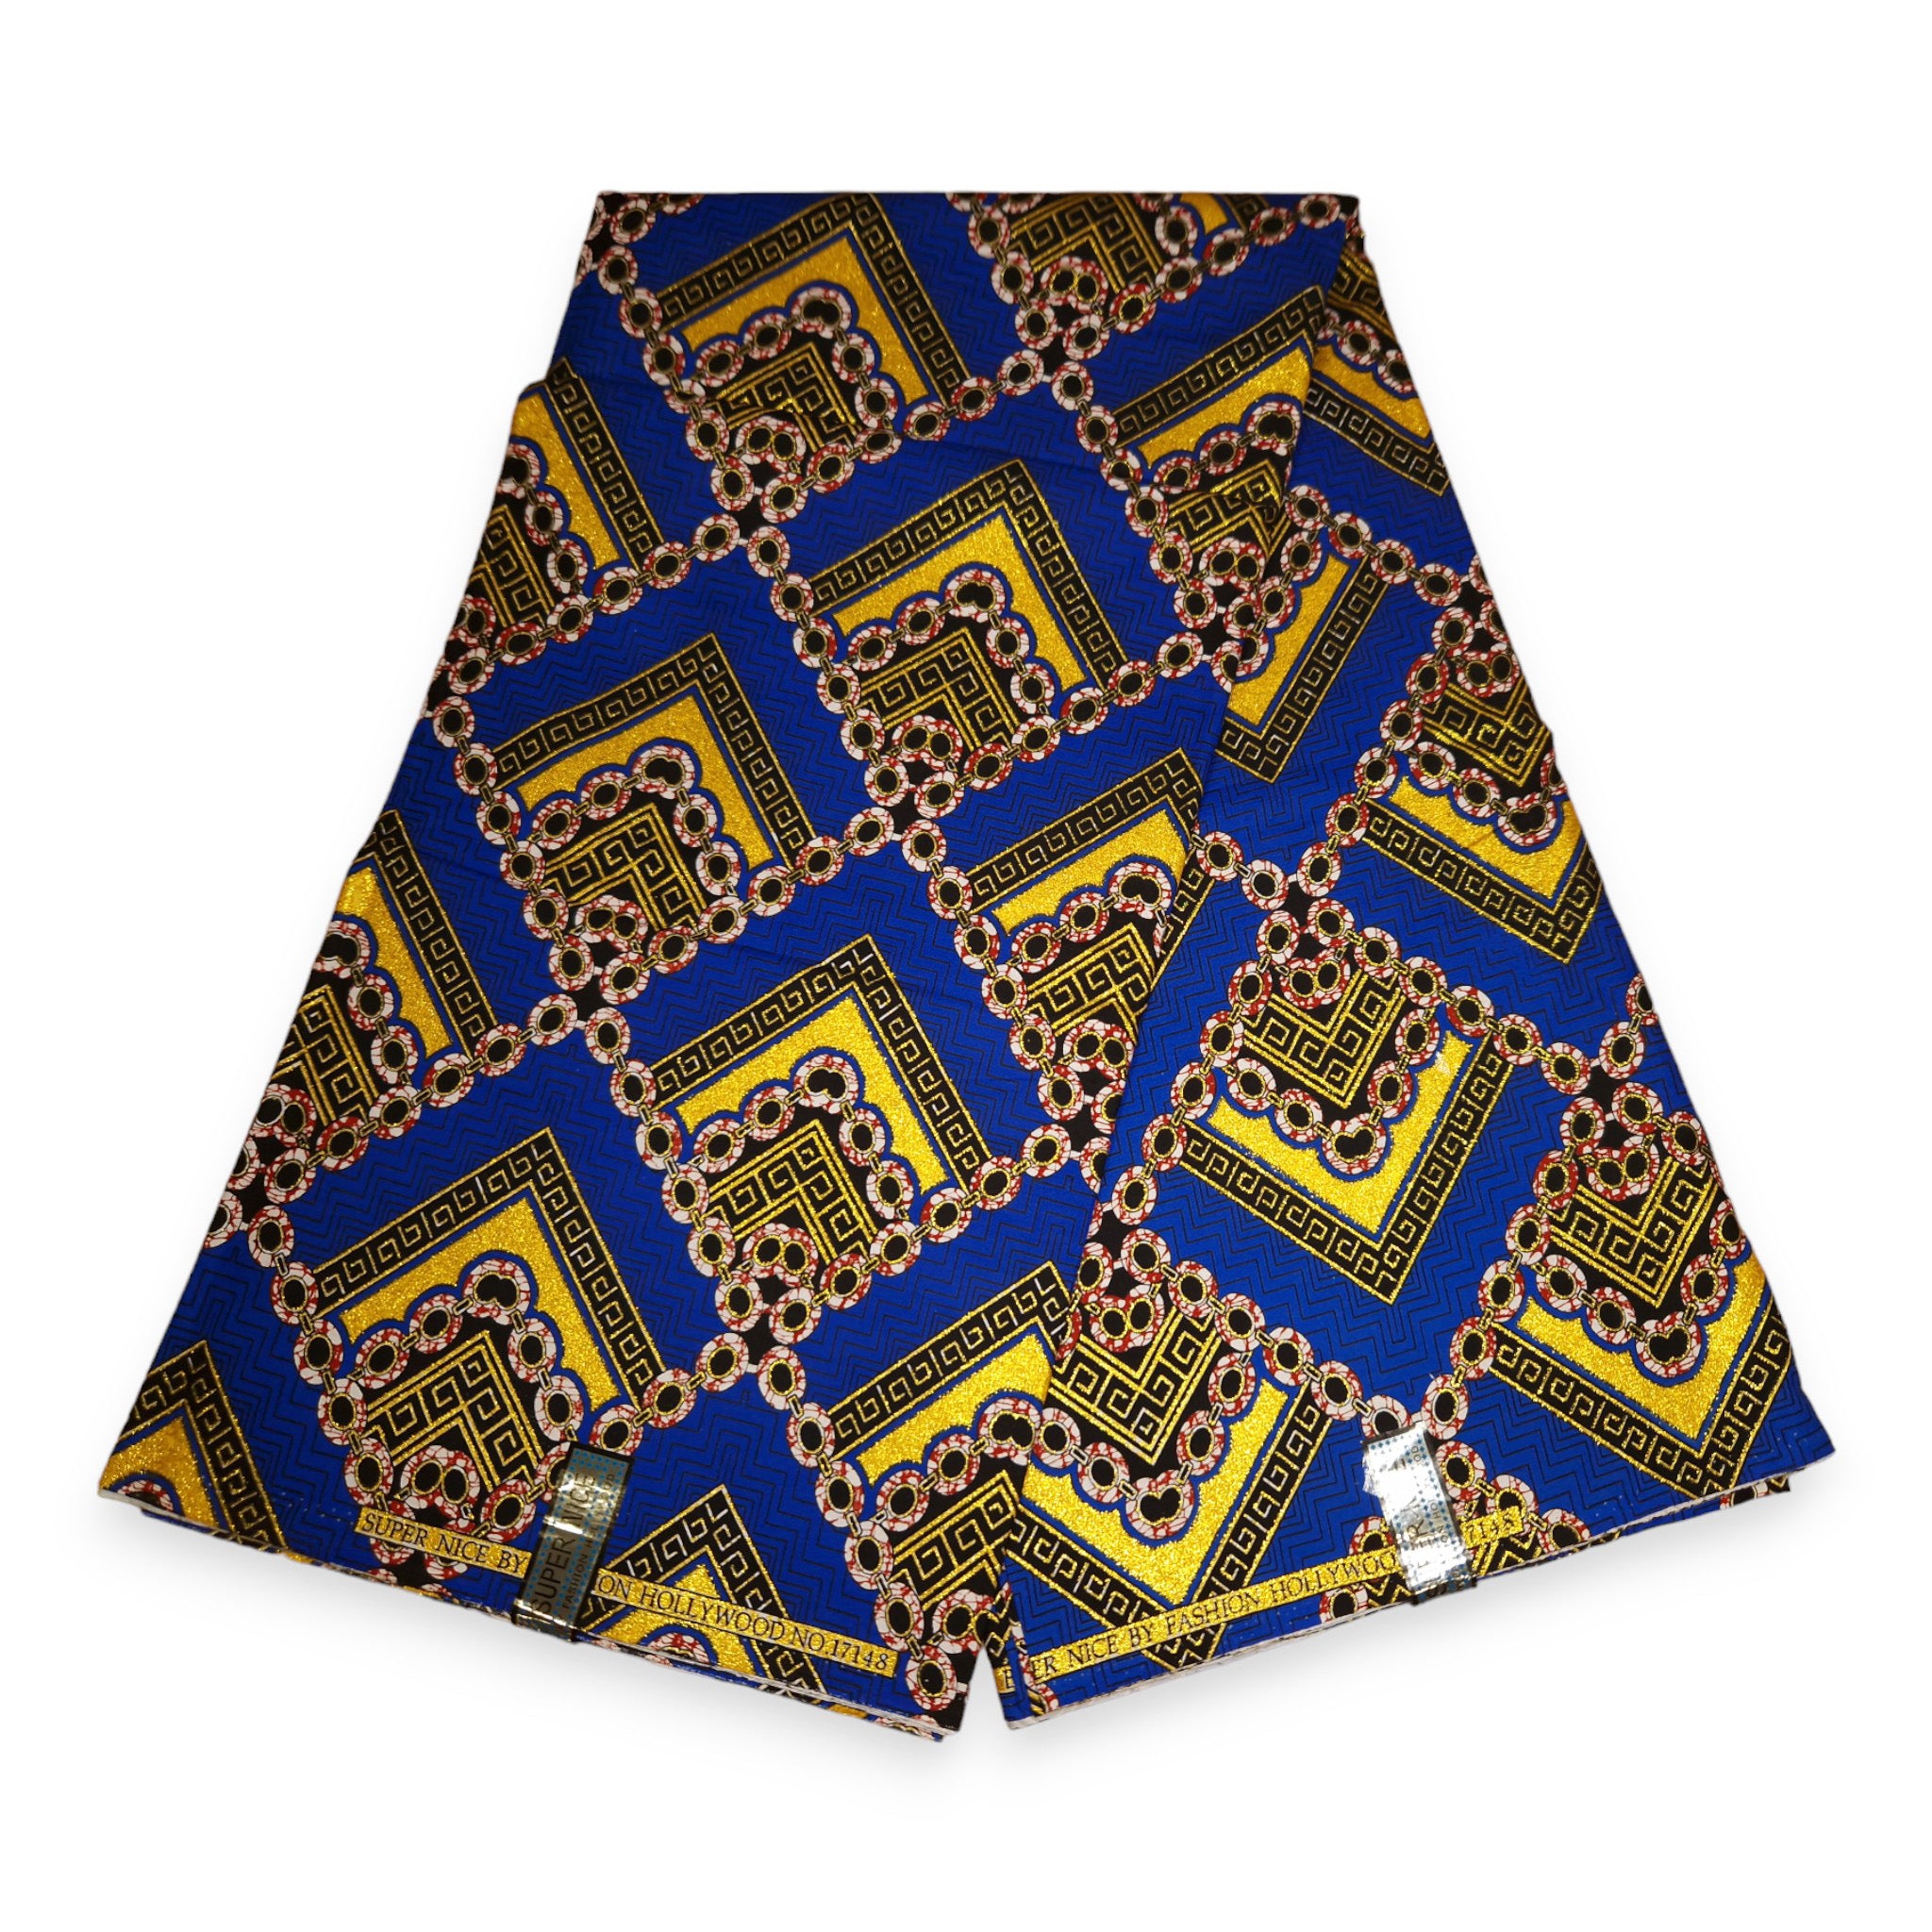 Afrikaanse stof - Exclusief versierd met glittereffecten 100% katoen - PO-5009 Goud Blauw